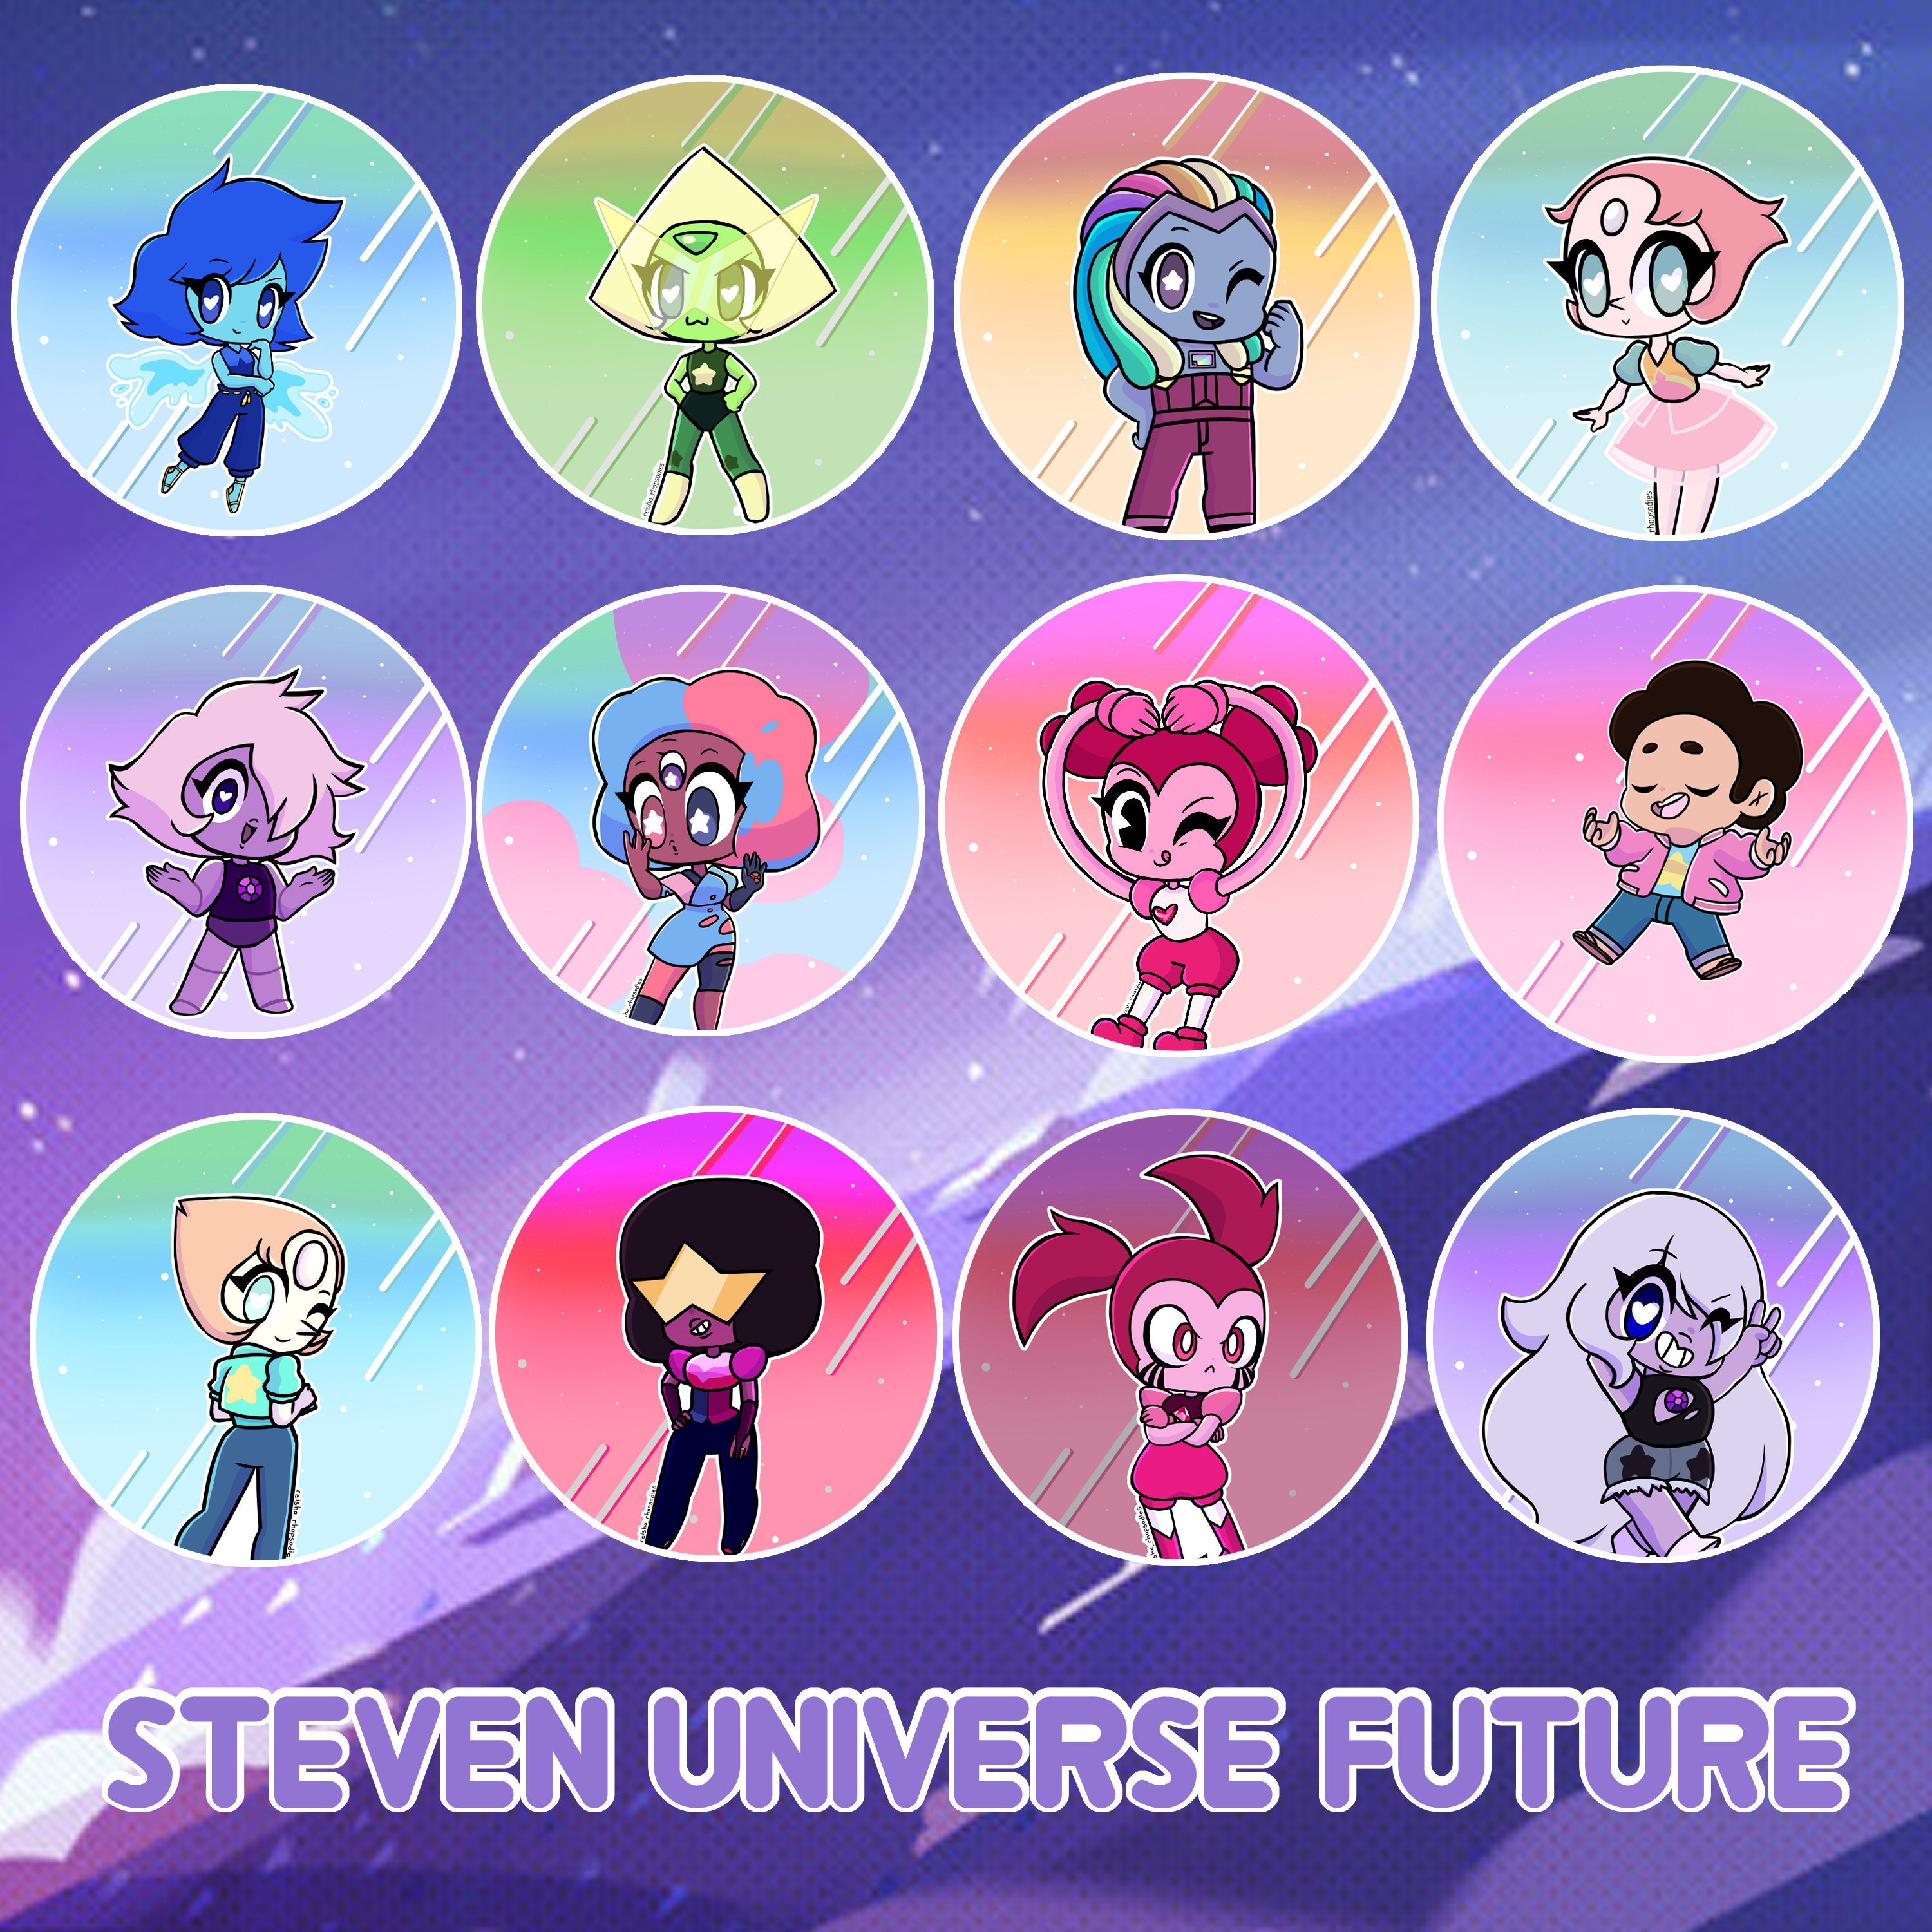 O Fim  O Futuro - Steven Universo Futuro (clip) 